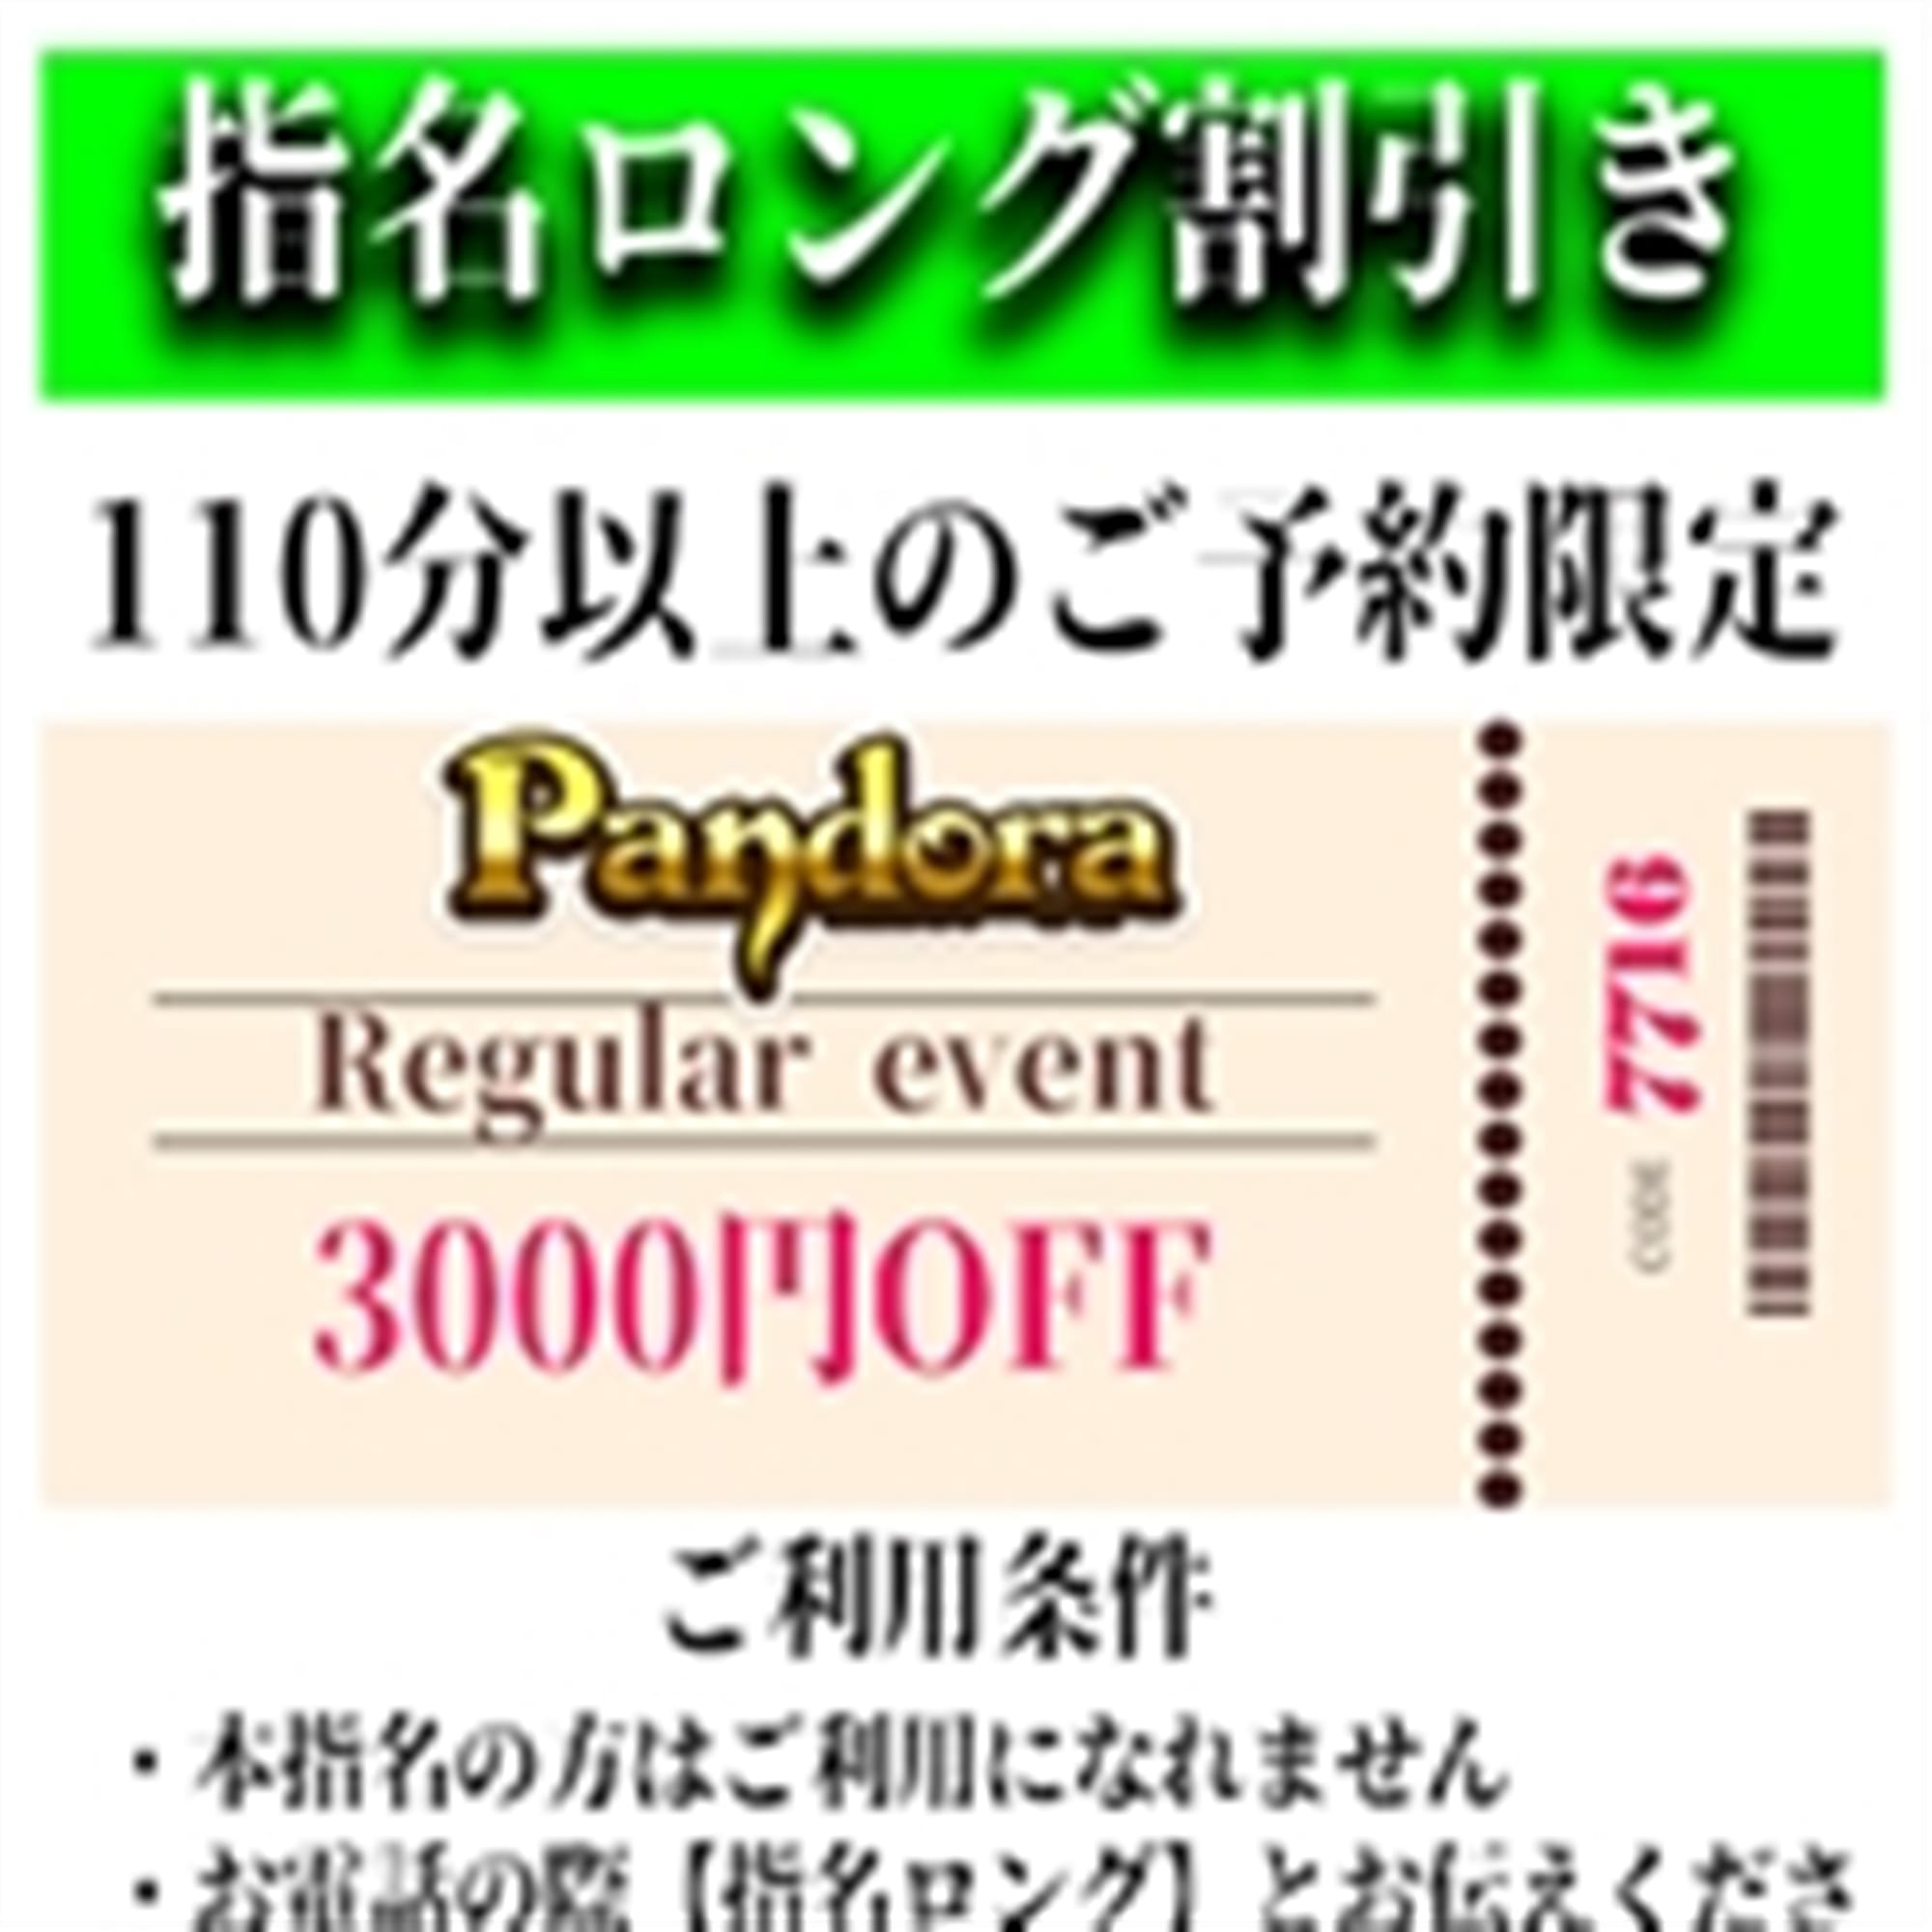 「ご指名のお客様も遊べるロングコース割引」05/06(月) 05:22 | Pandora(パンドラ)新潟のお得なニュース